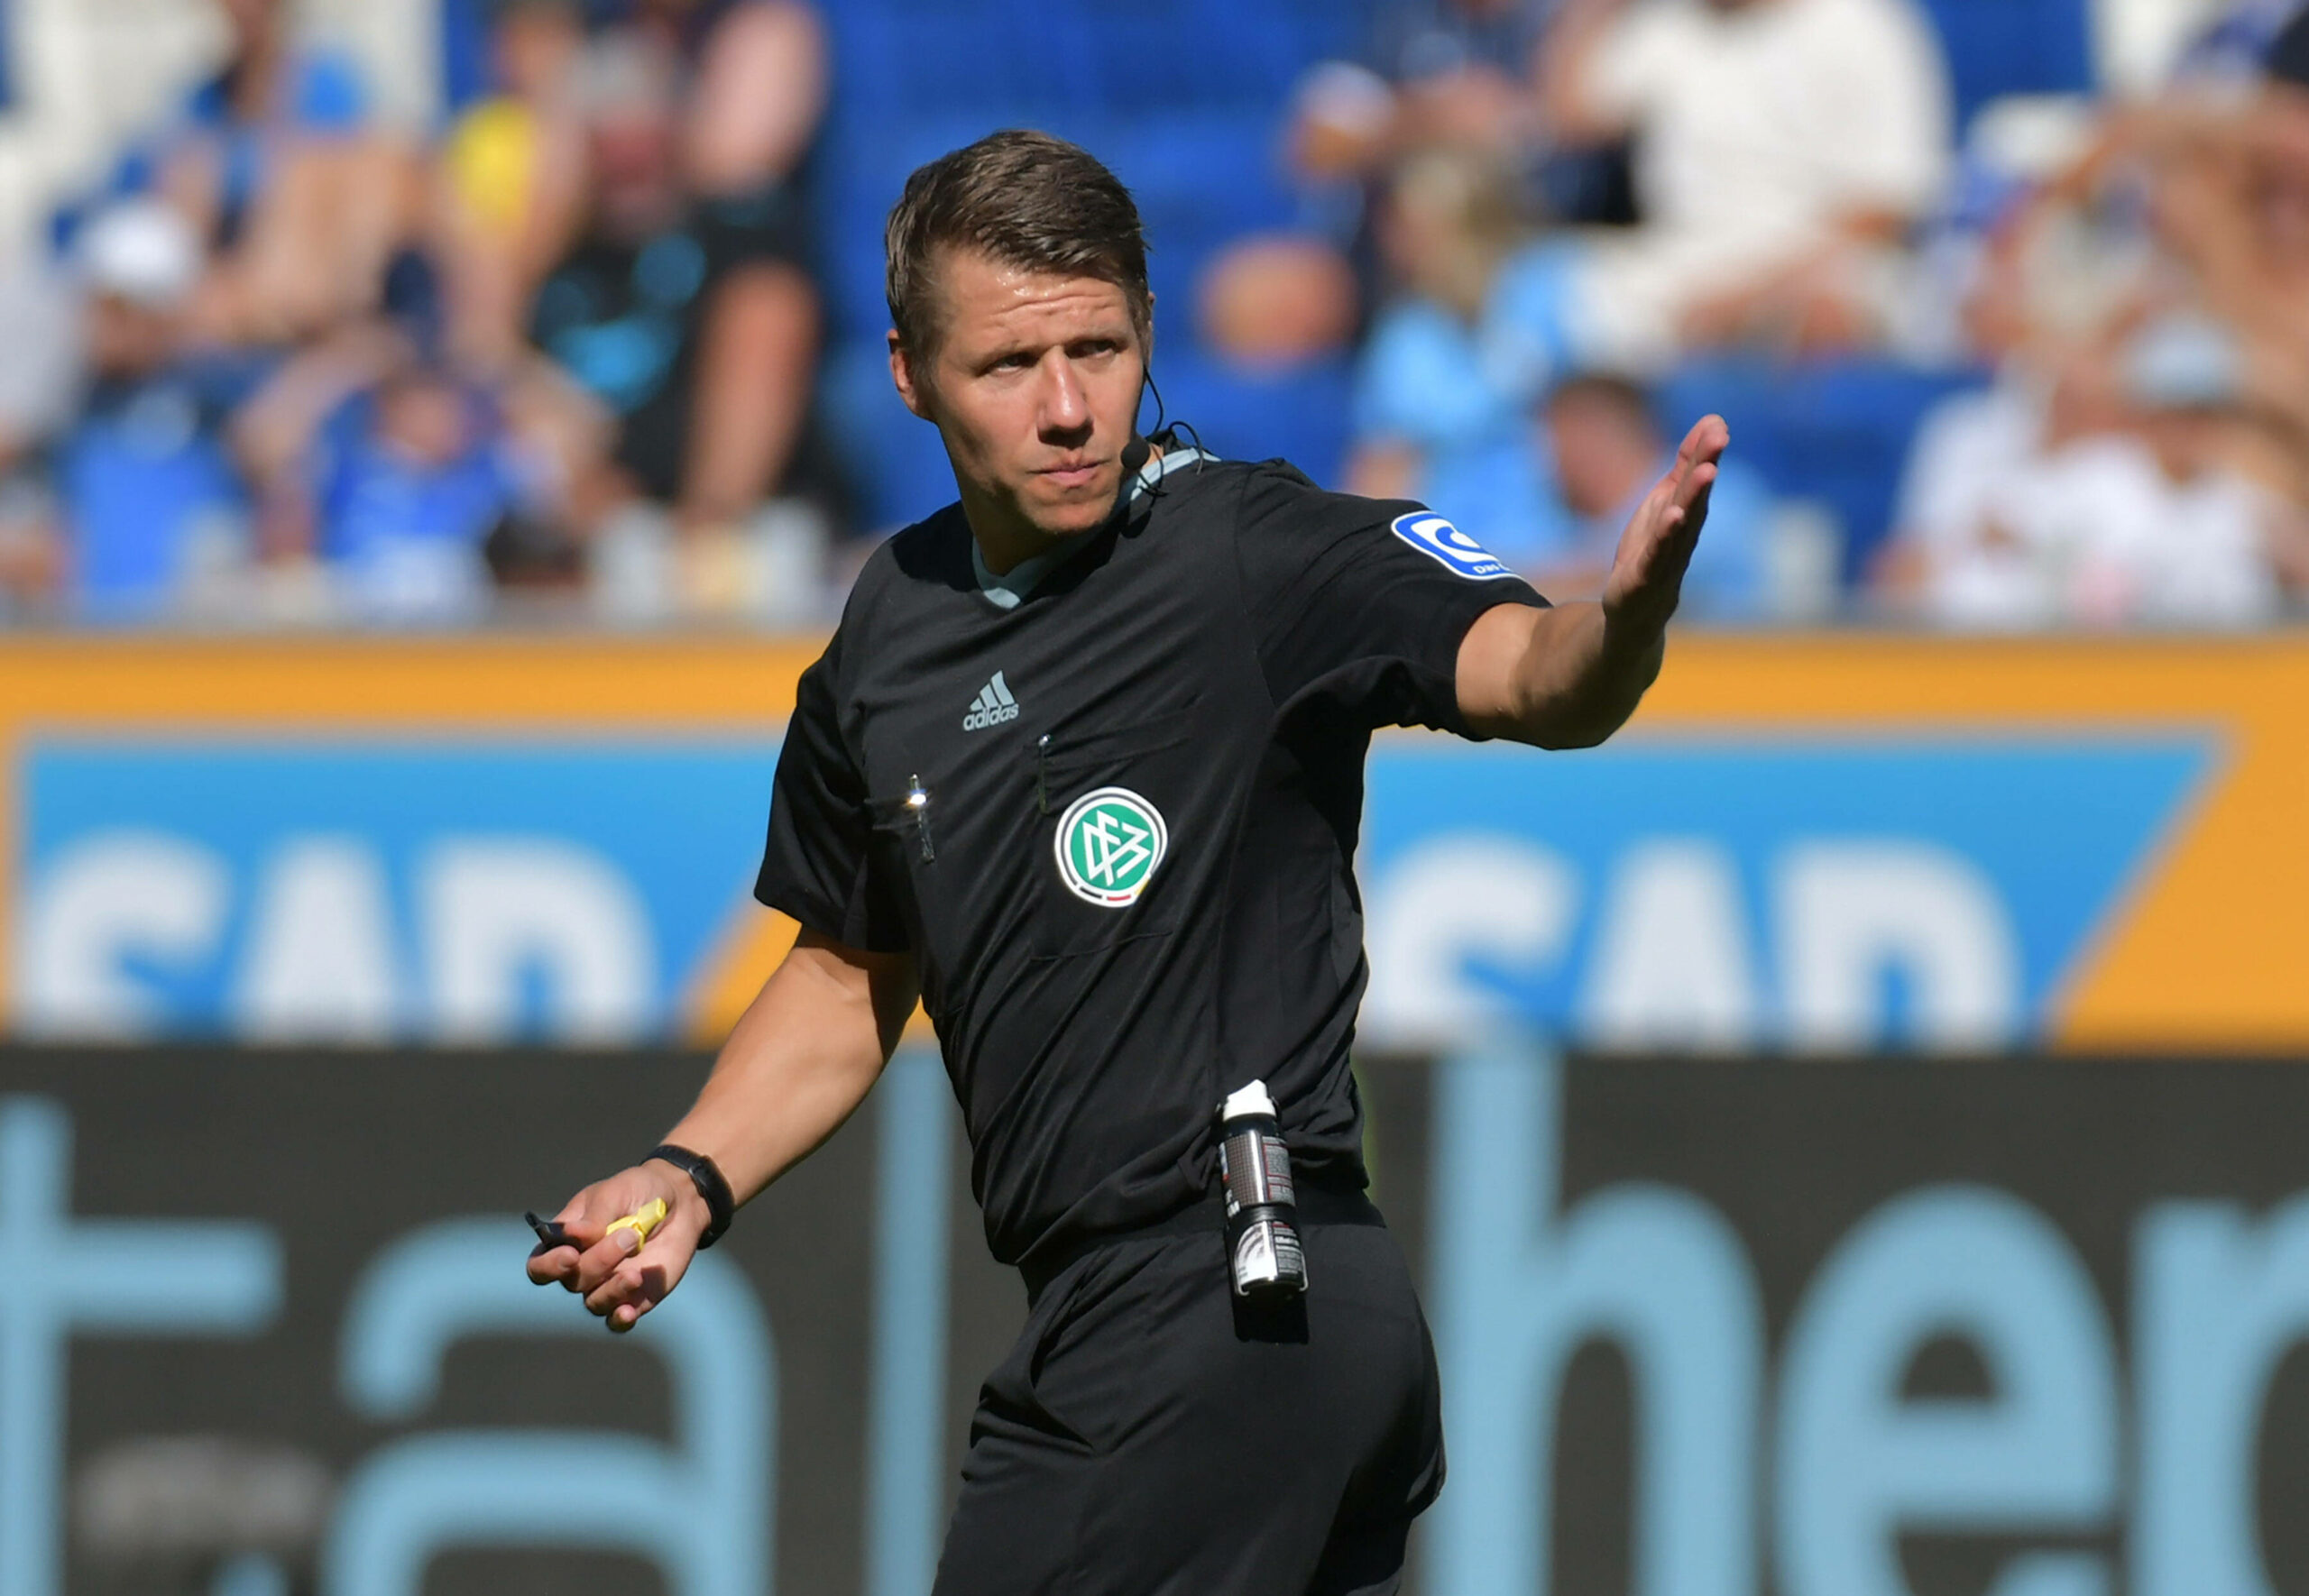 Patrick Ittrich stellte sich nach dem Spiel zwischen Hoffenheim und Bochum einem pöbelnden Fan.